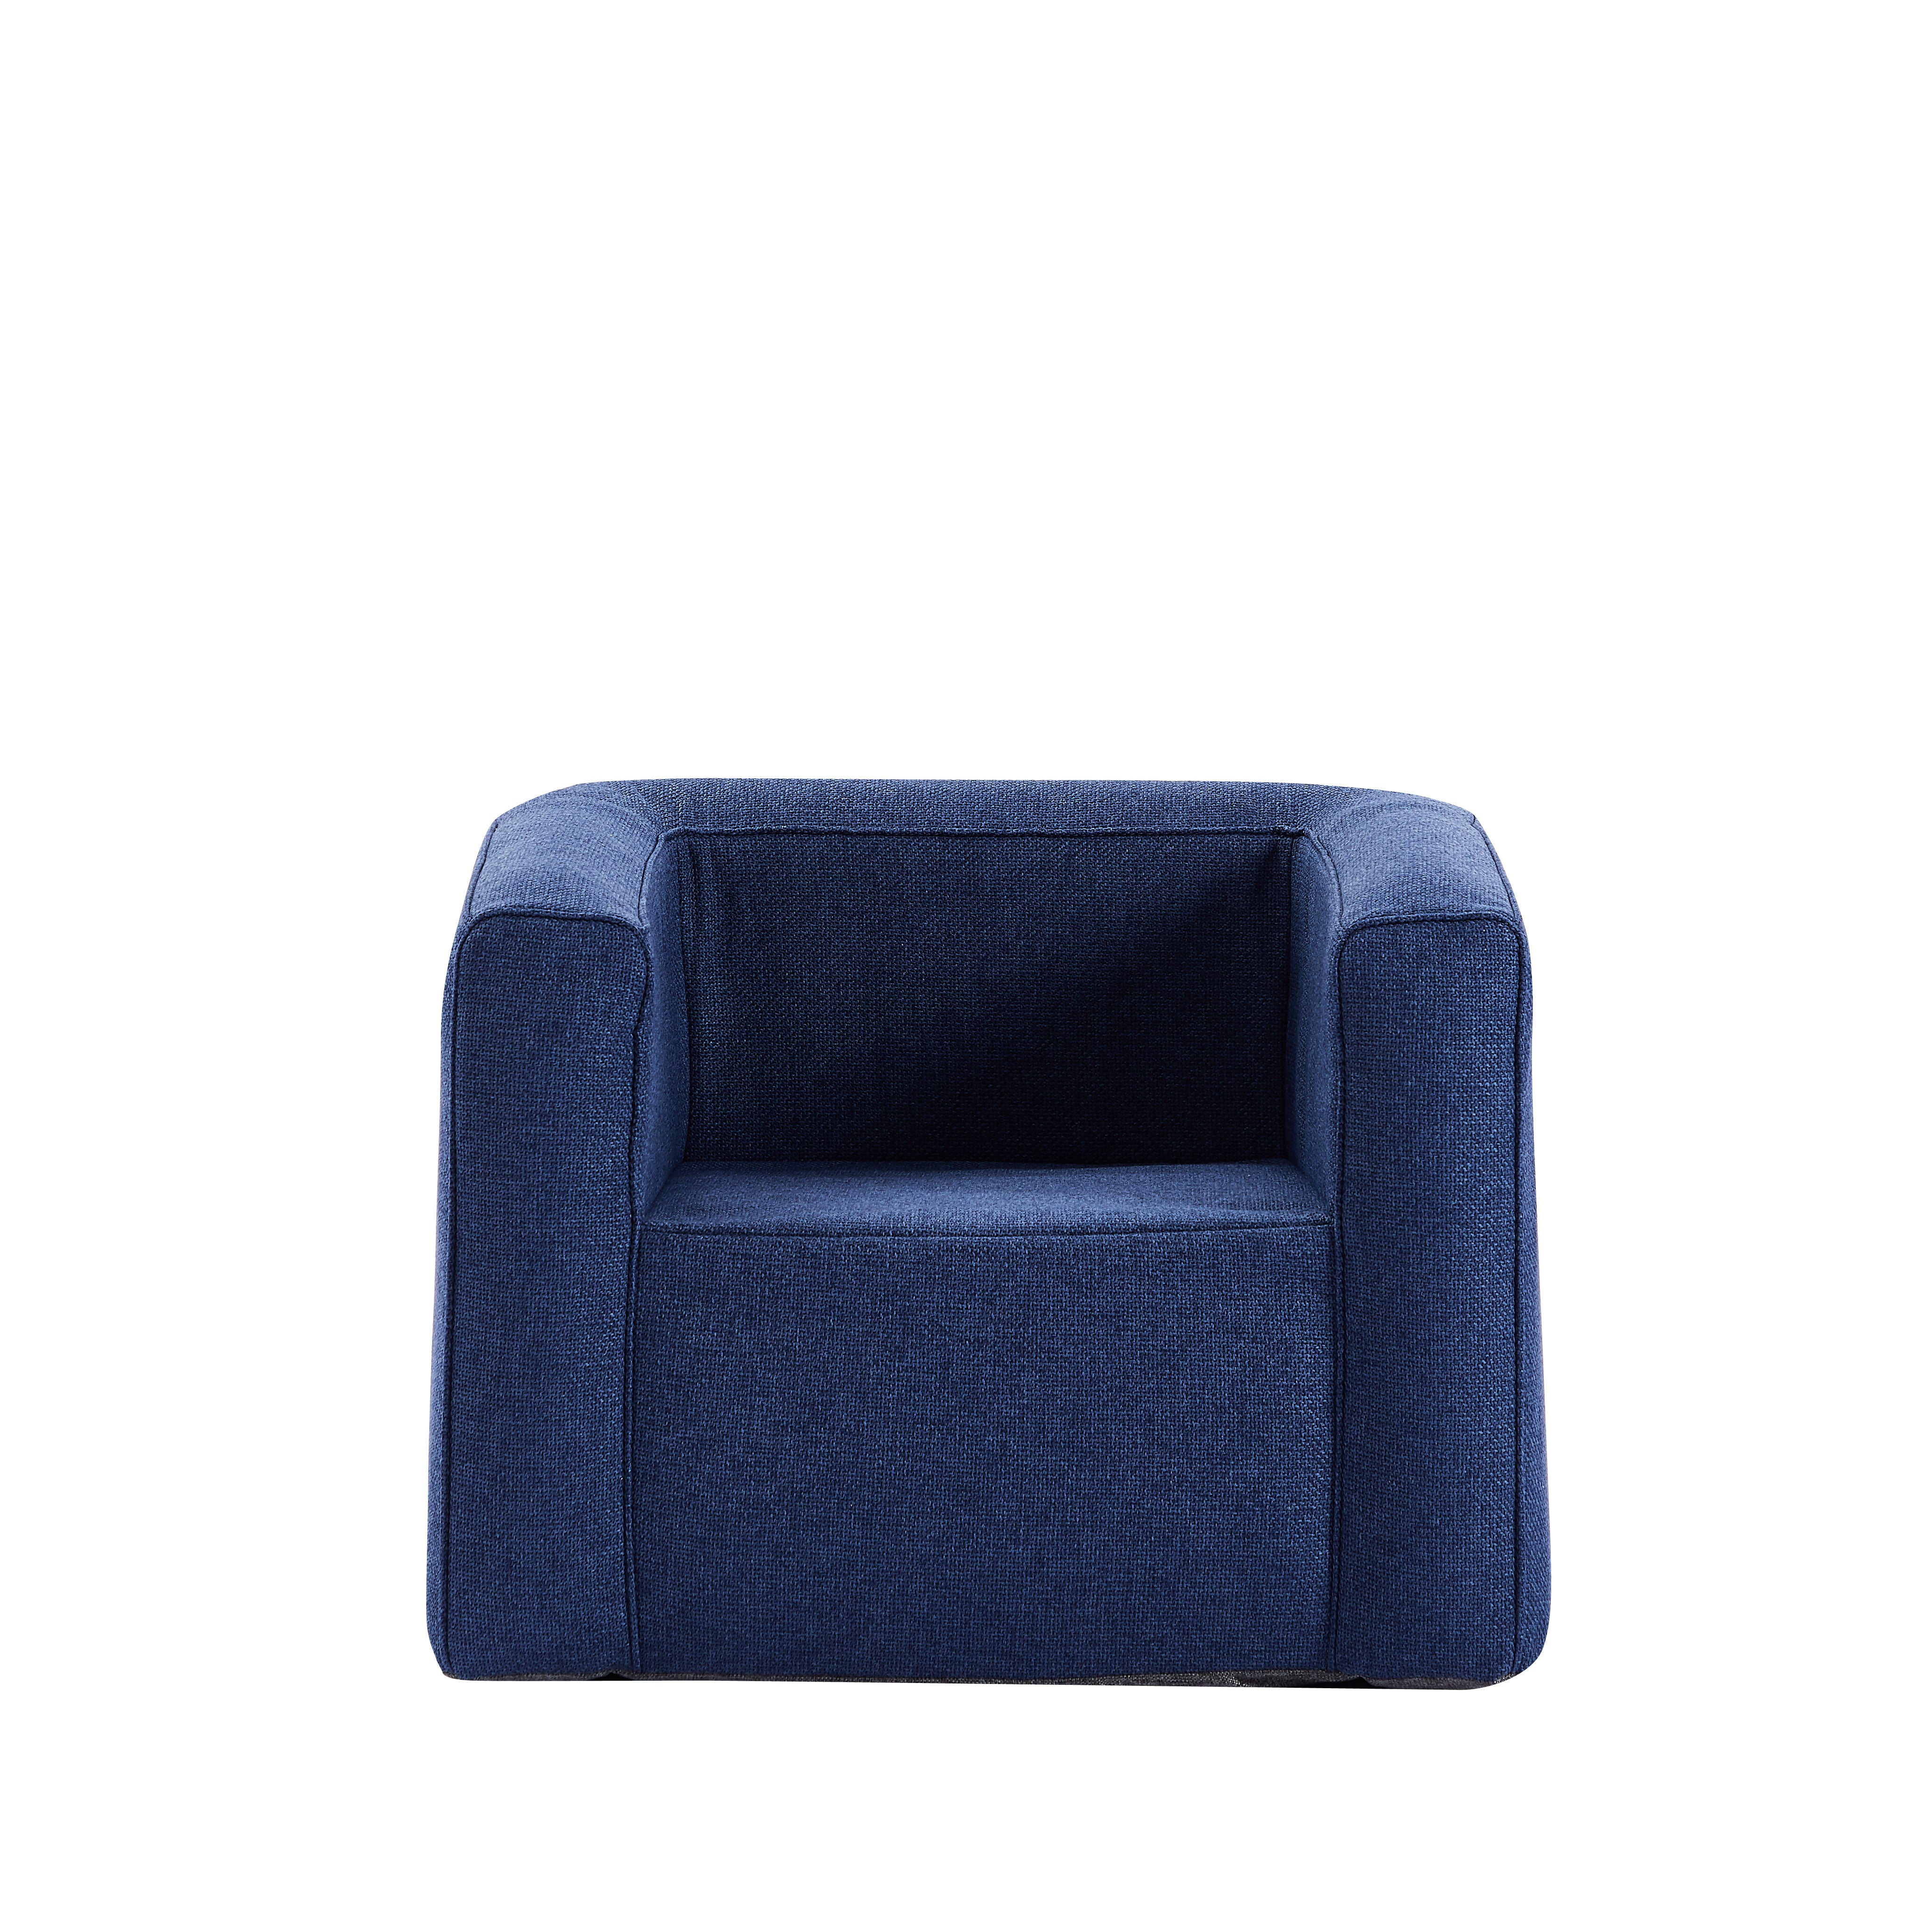 Fauteuil gonflable Terracotta - Intérieur et extérieur - Couleur Bleu